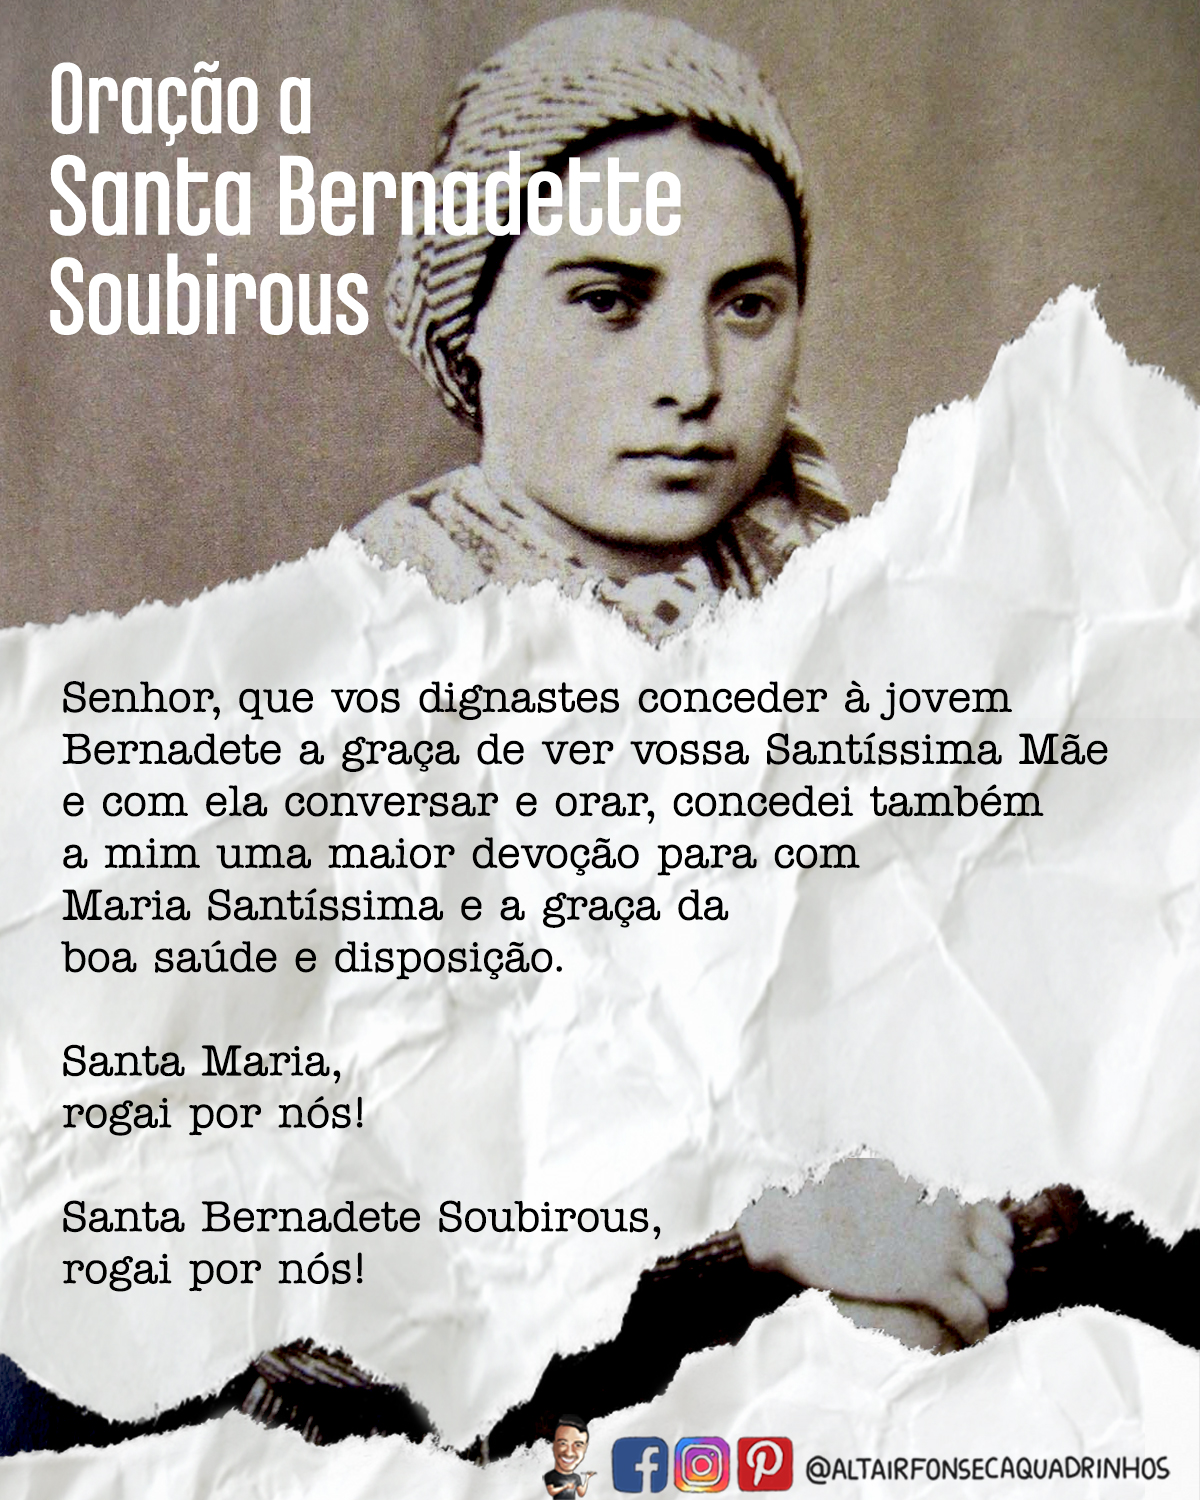 Oração a Santa Bernadette Soubirous